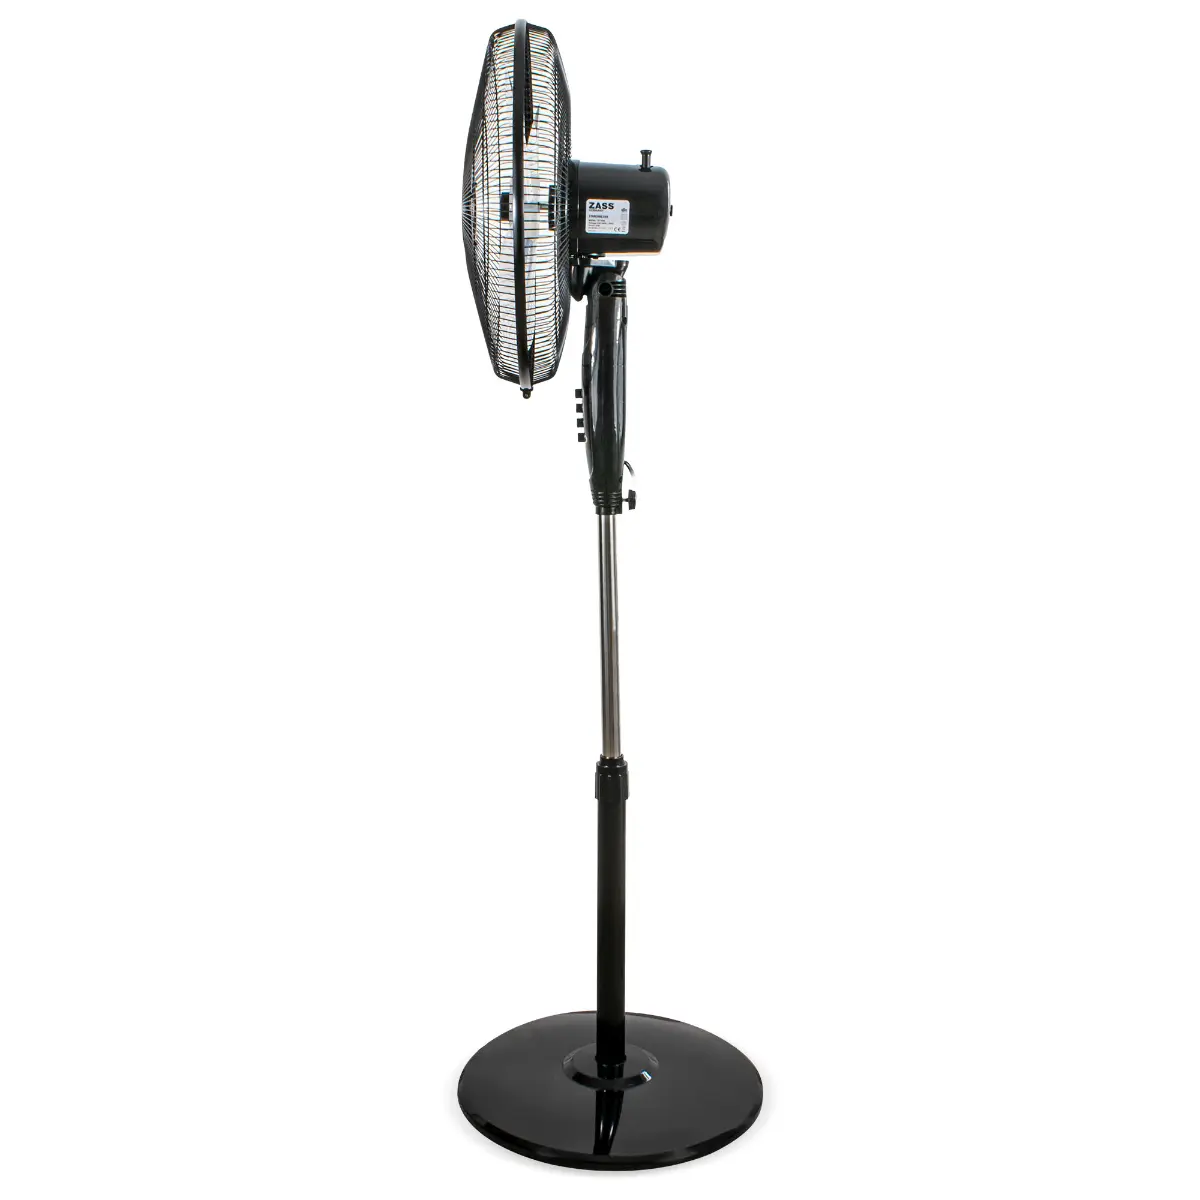 Ventilator cu picior Zass ZF 1606, 45W, Negru